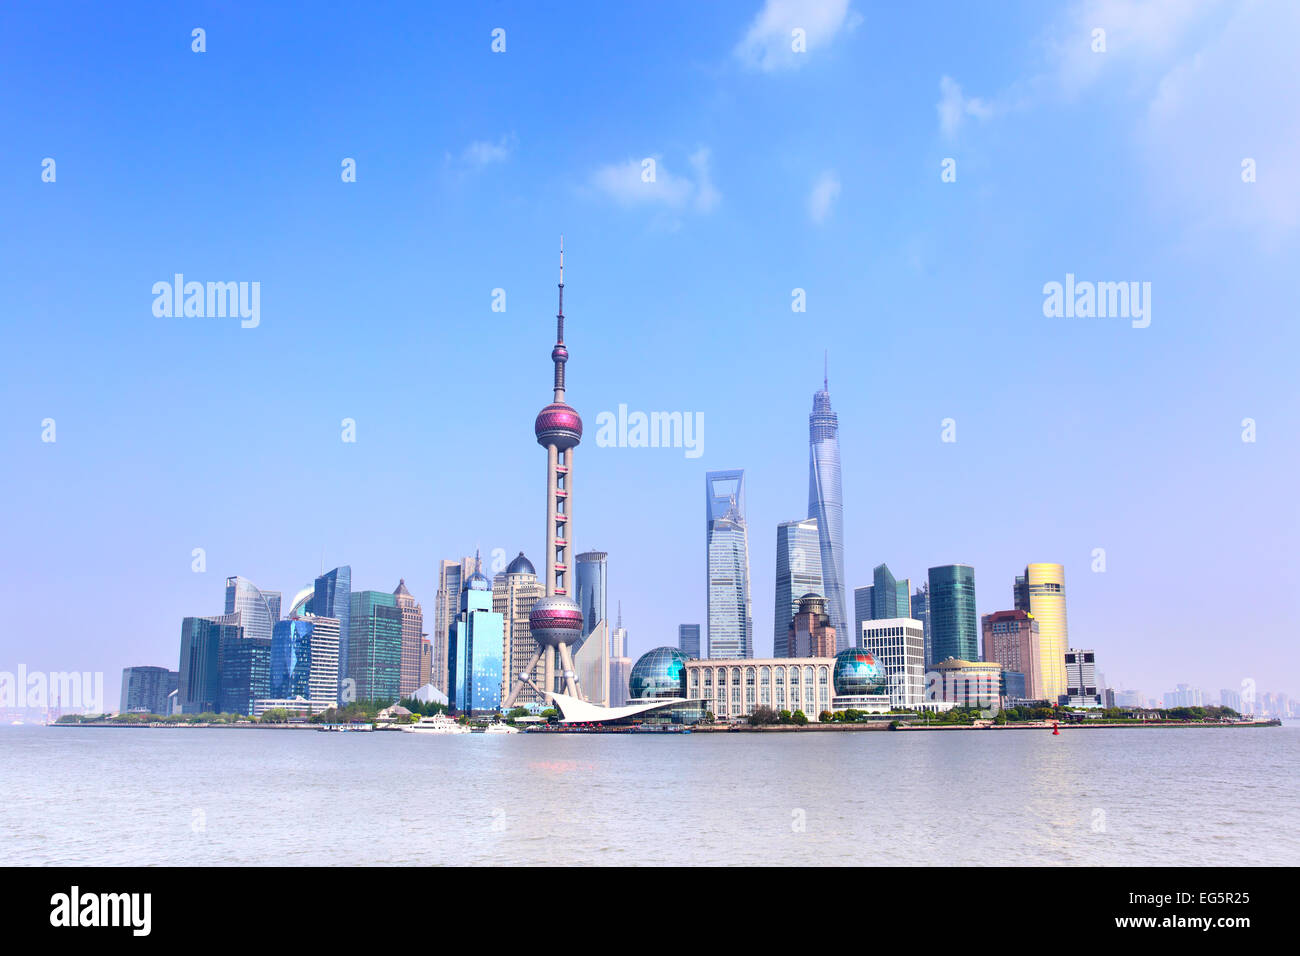 Panoramic view of Shanghai skyline, China Stock Photo